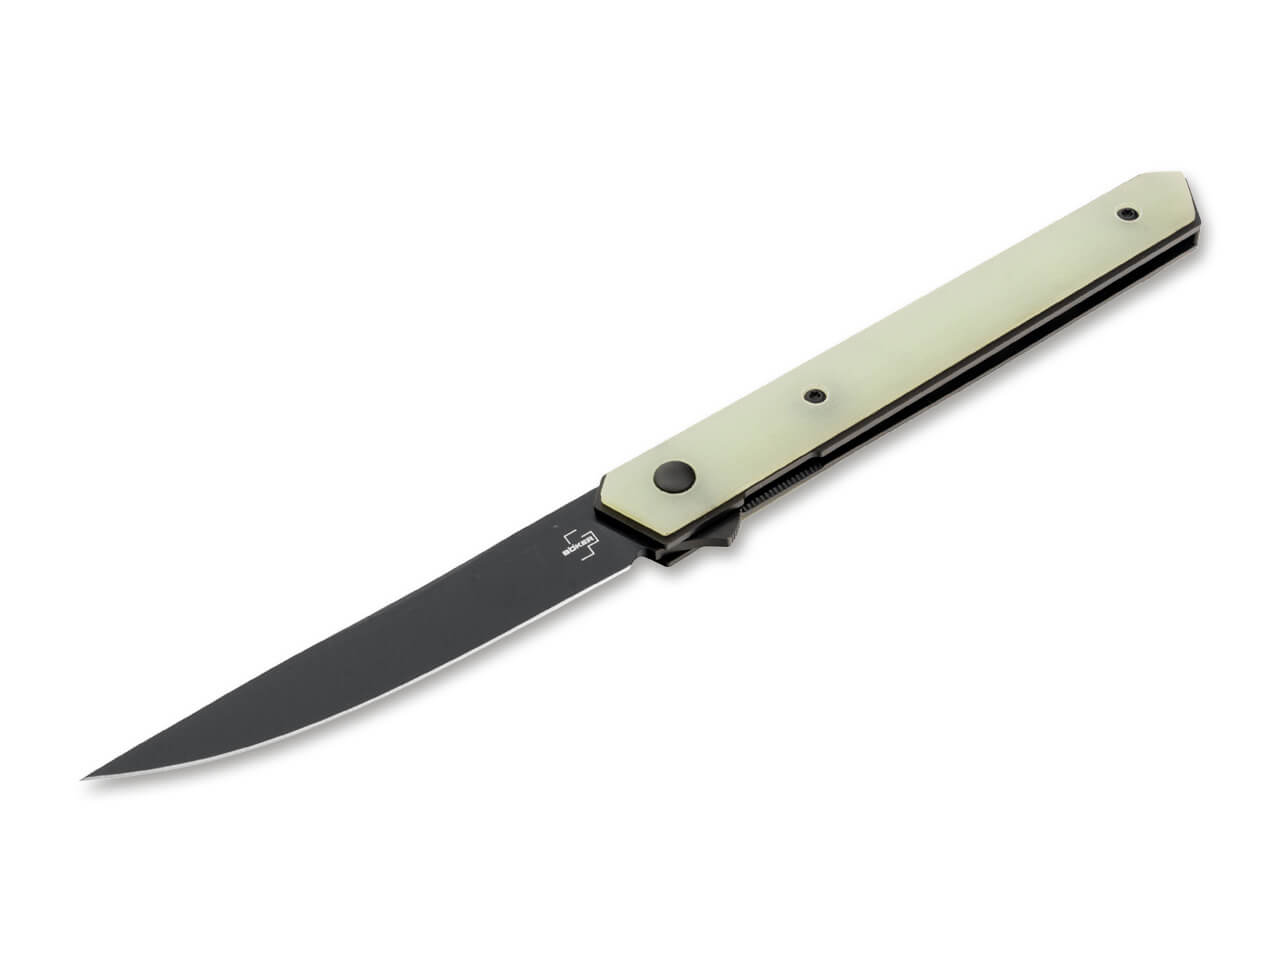 Boker Plus - Kwaiken Air Flipper Knife - VG-10 Black Blade - Jade G10 Handles - 01BO343